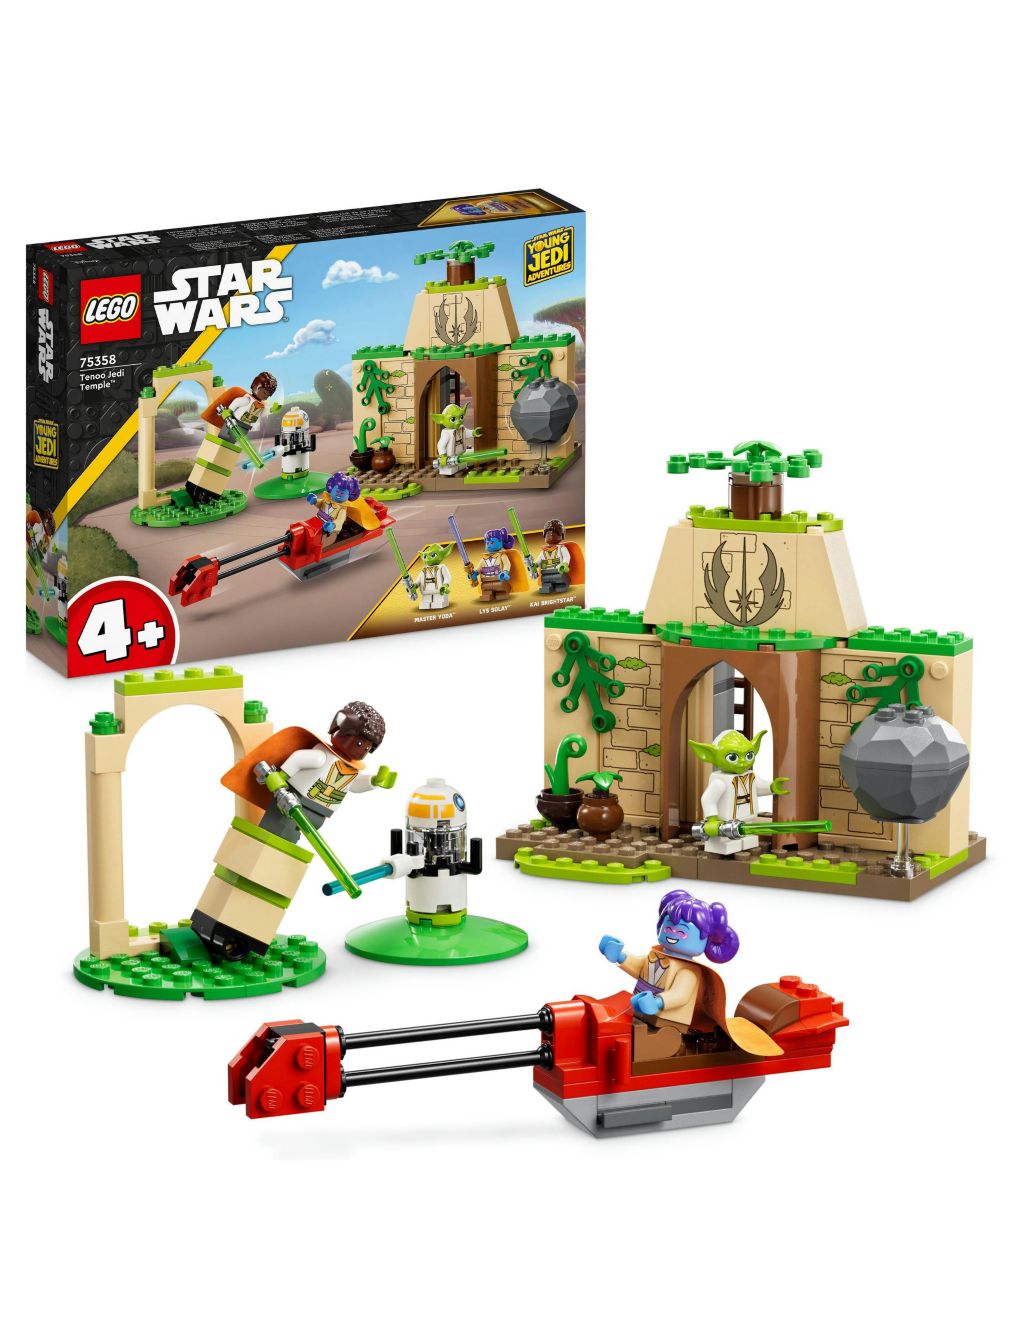 LEGO Star Wars Tenoo Jedi Temple 4+ Set 75358 (4+ Yrs)